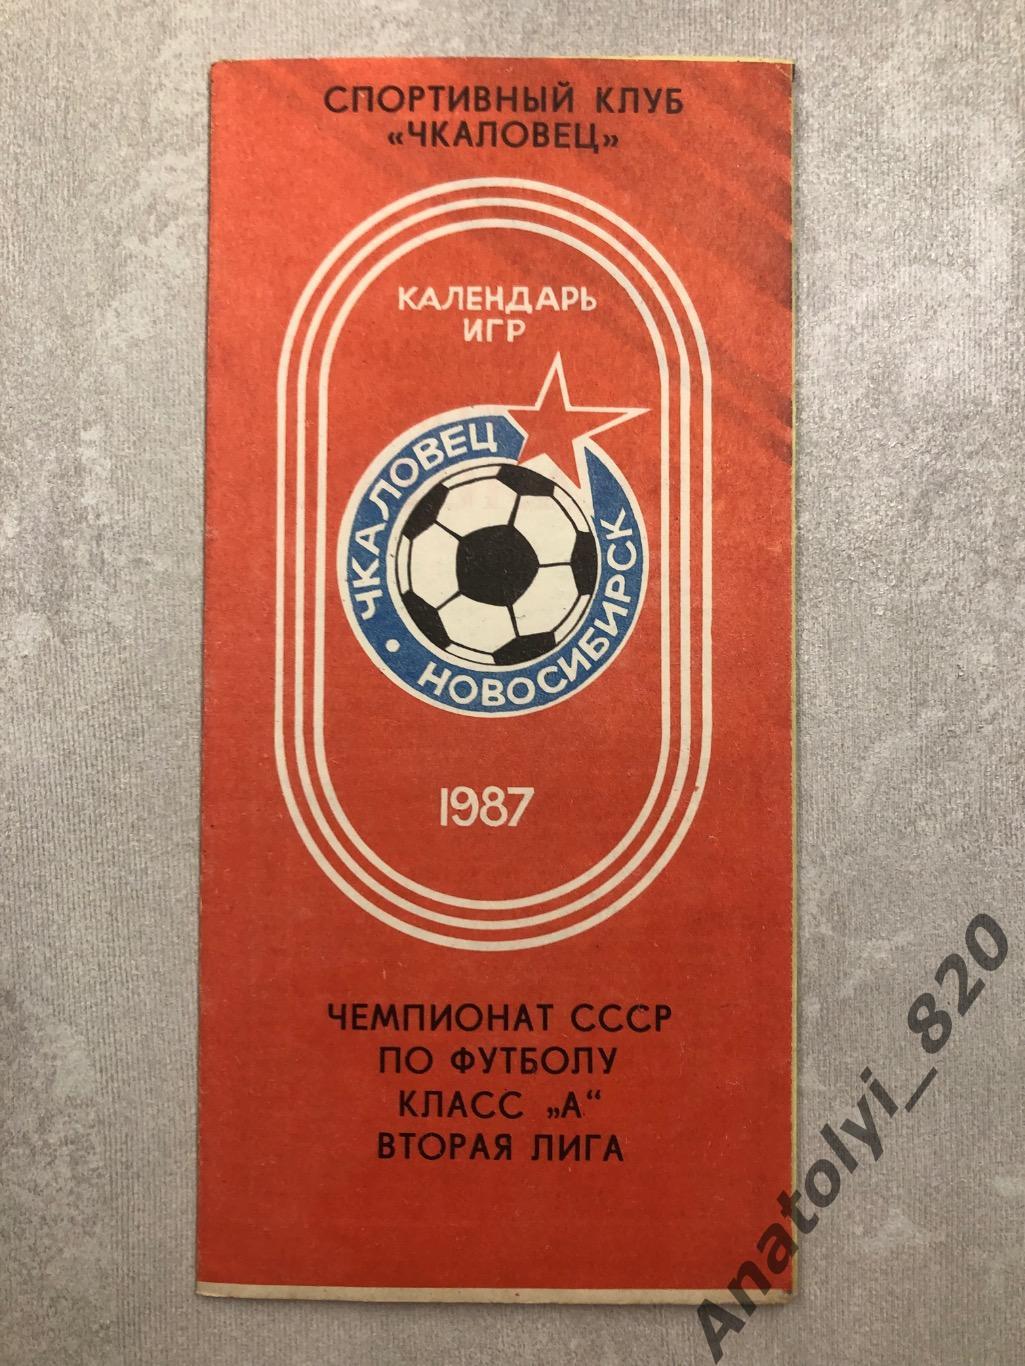 Чкаловец Новосибирск, календарь игр 1987 года